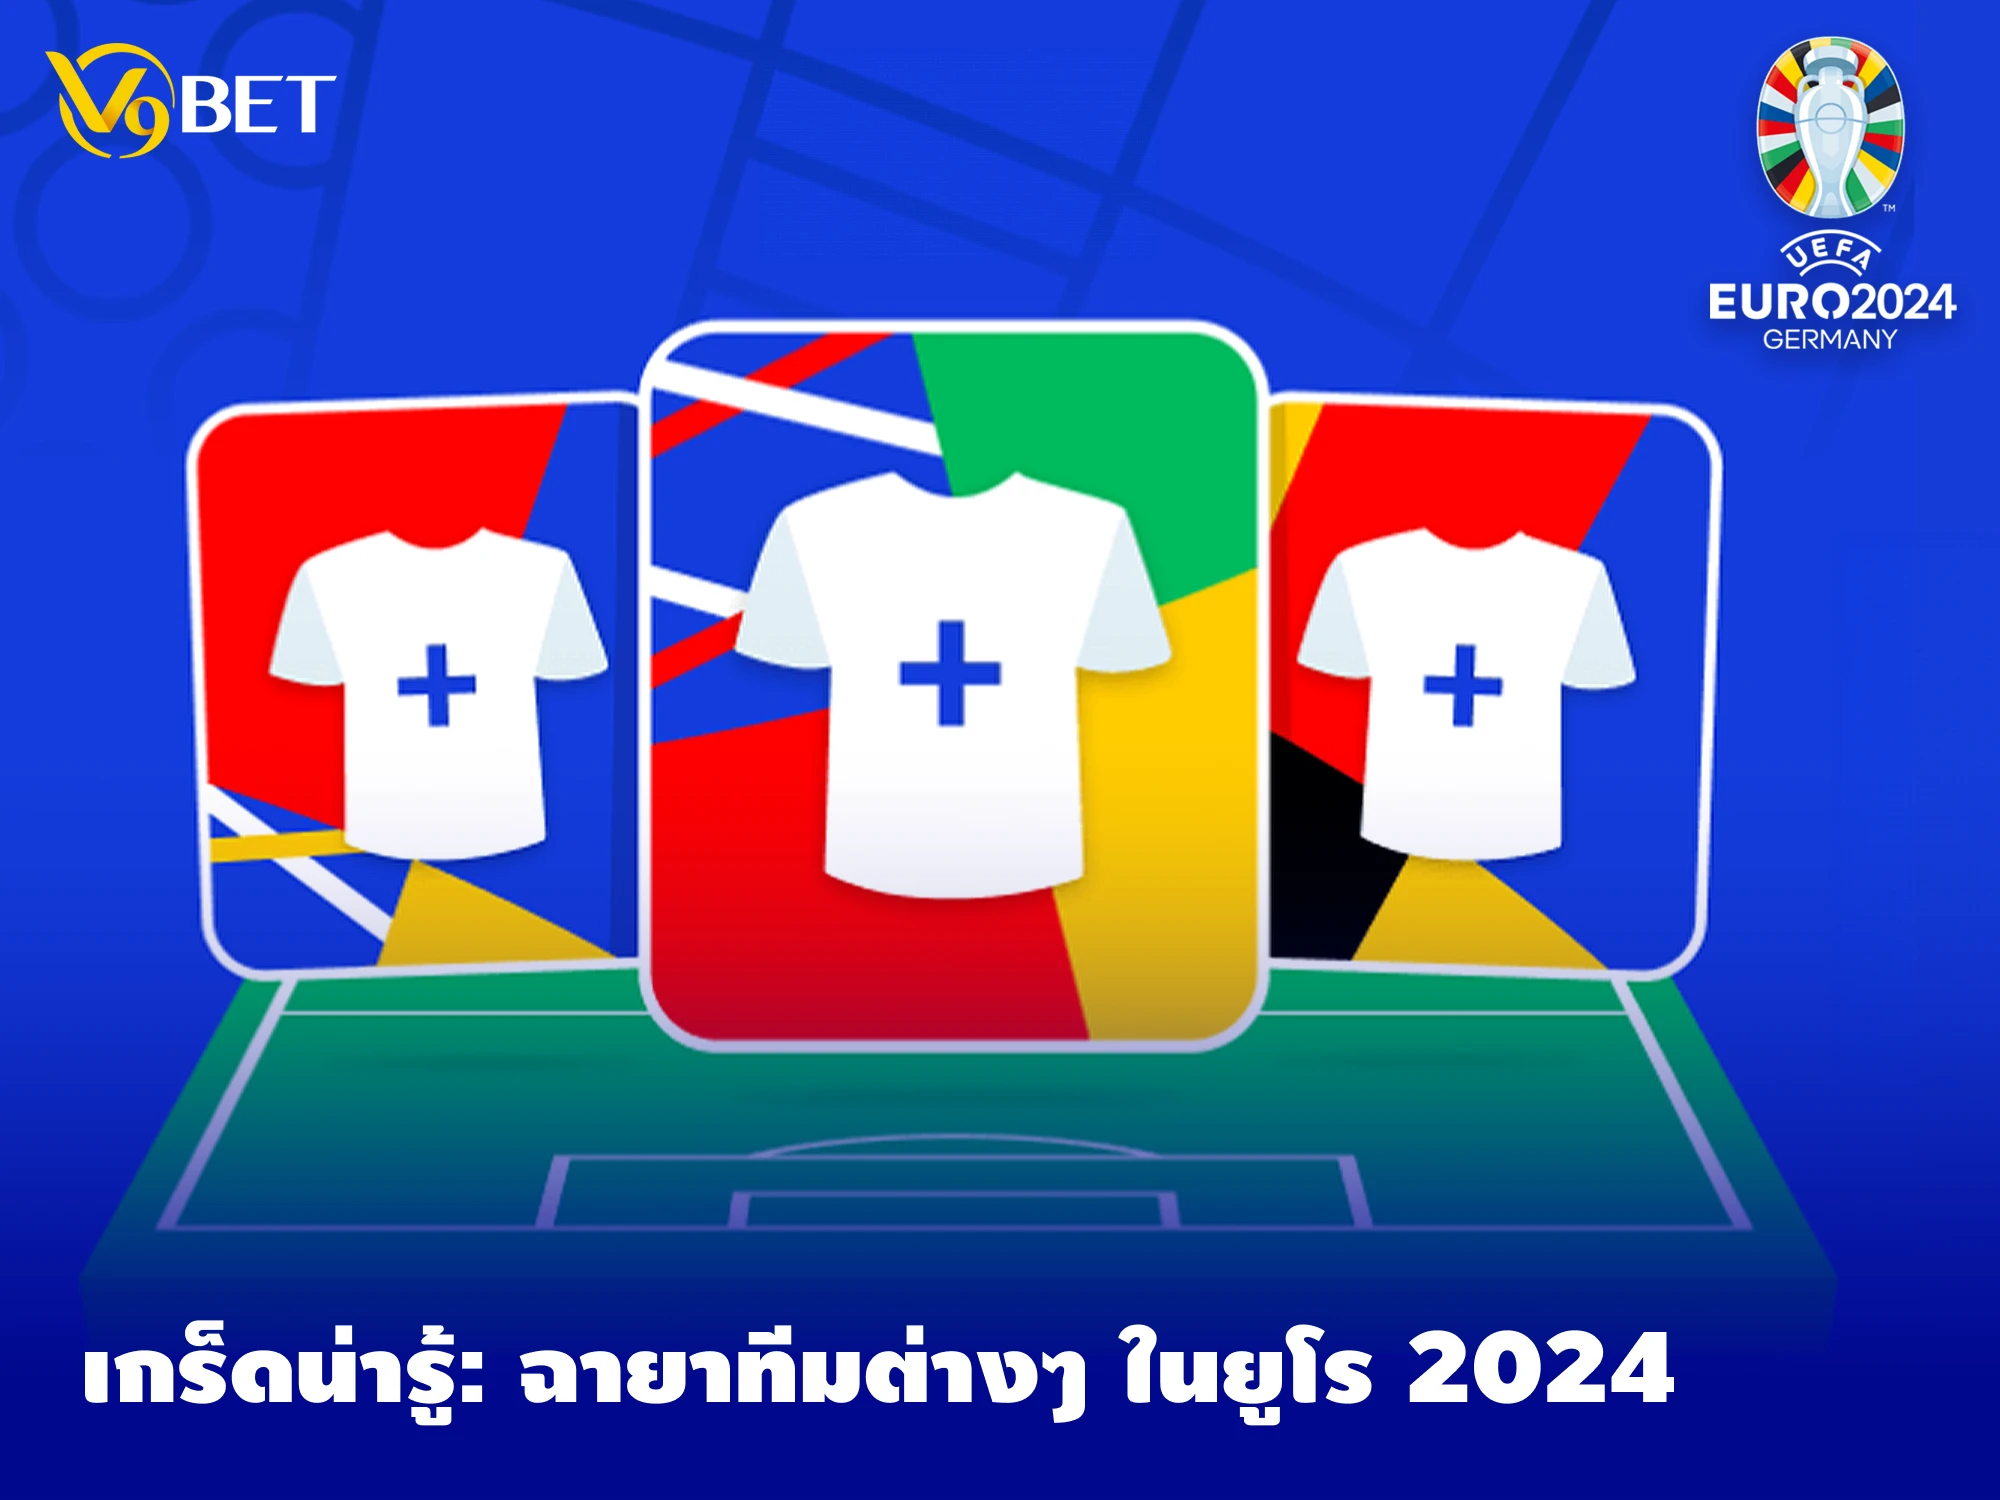 ยูโร 2024: เกร็ดความรู้คู่ทัวร์นาเมนต์ รู้จักที่มา ฉายาทีมฟุตบอล 